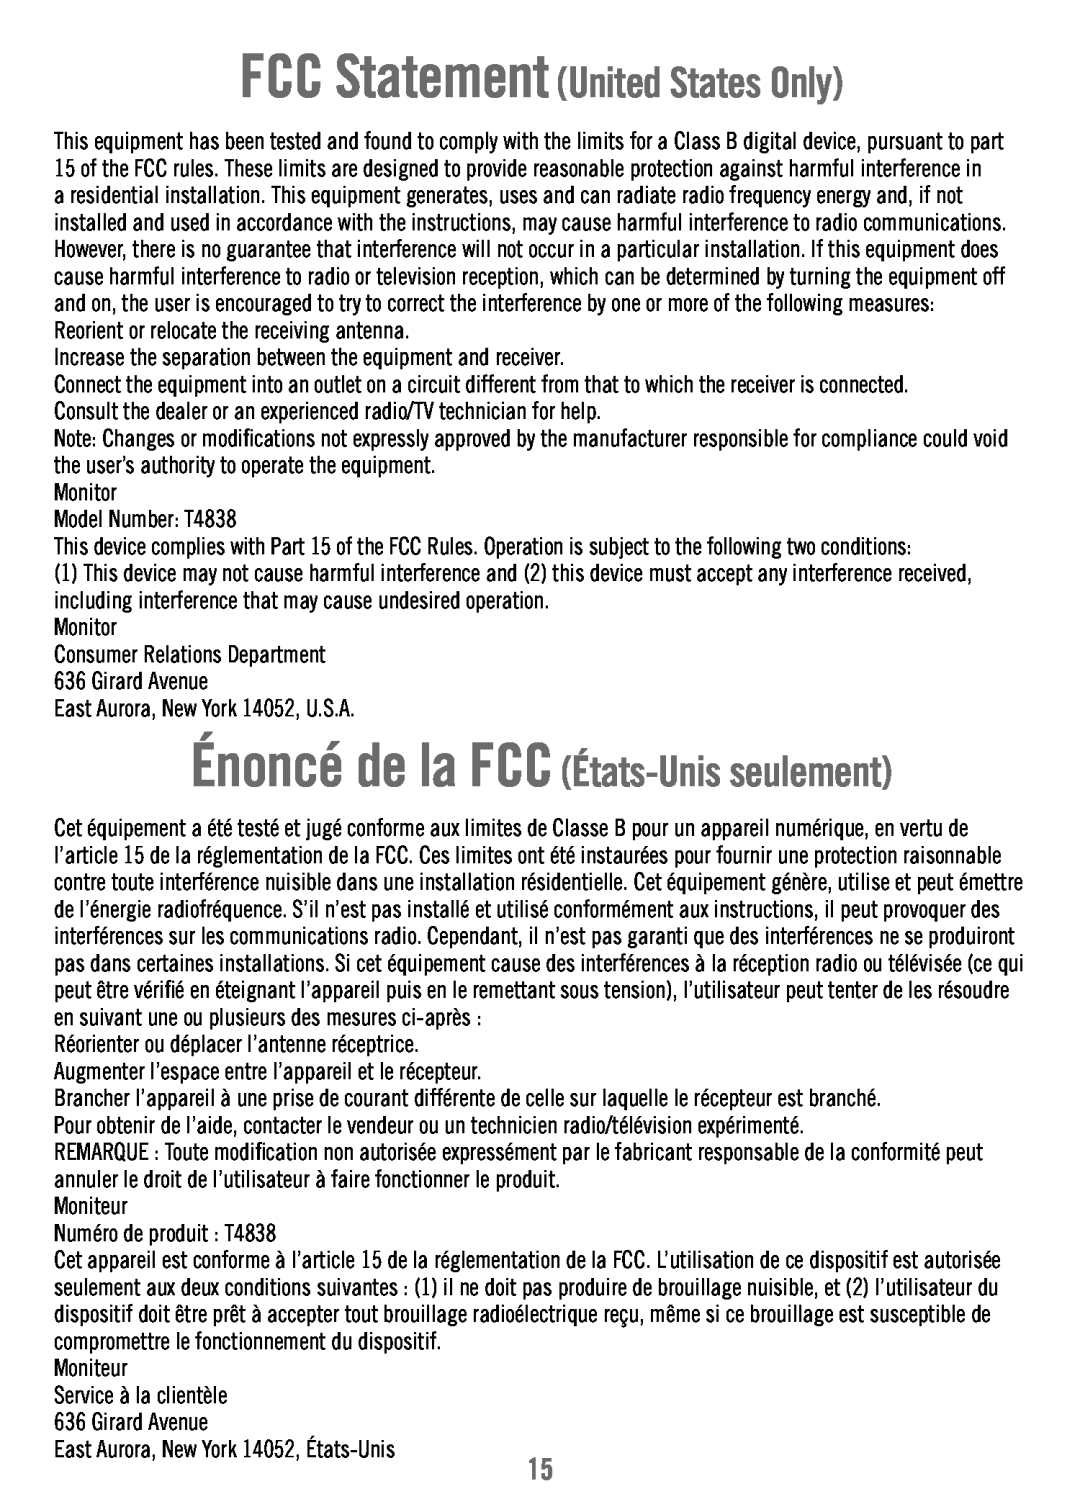 Fisher-Price T4838 manual Énoncé de la FCC États-Unisseulement, FCC Statement United States Only 